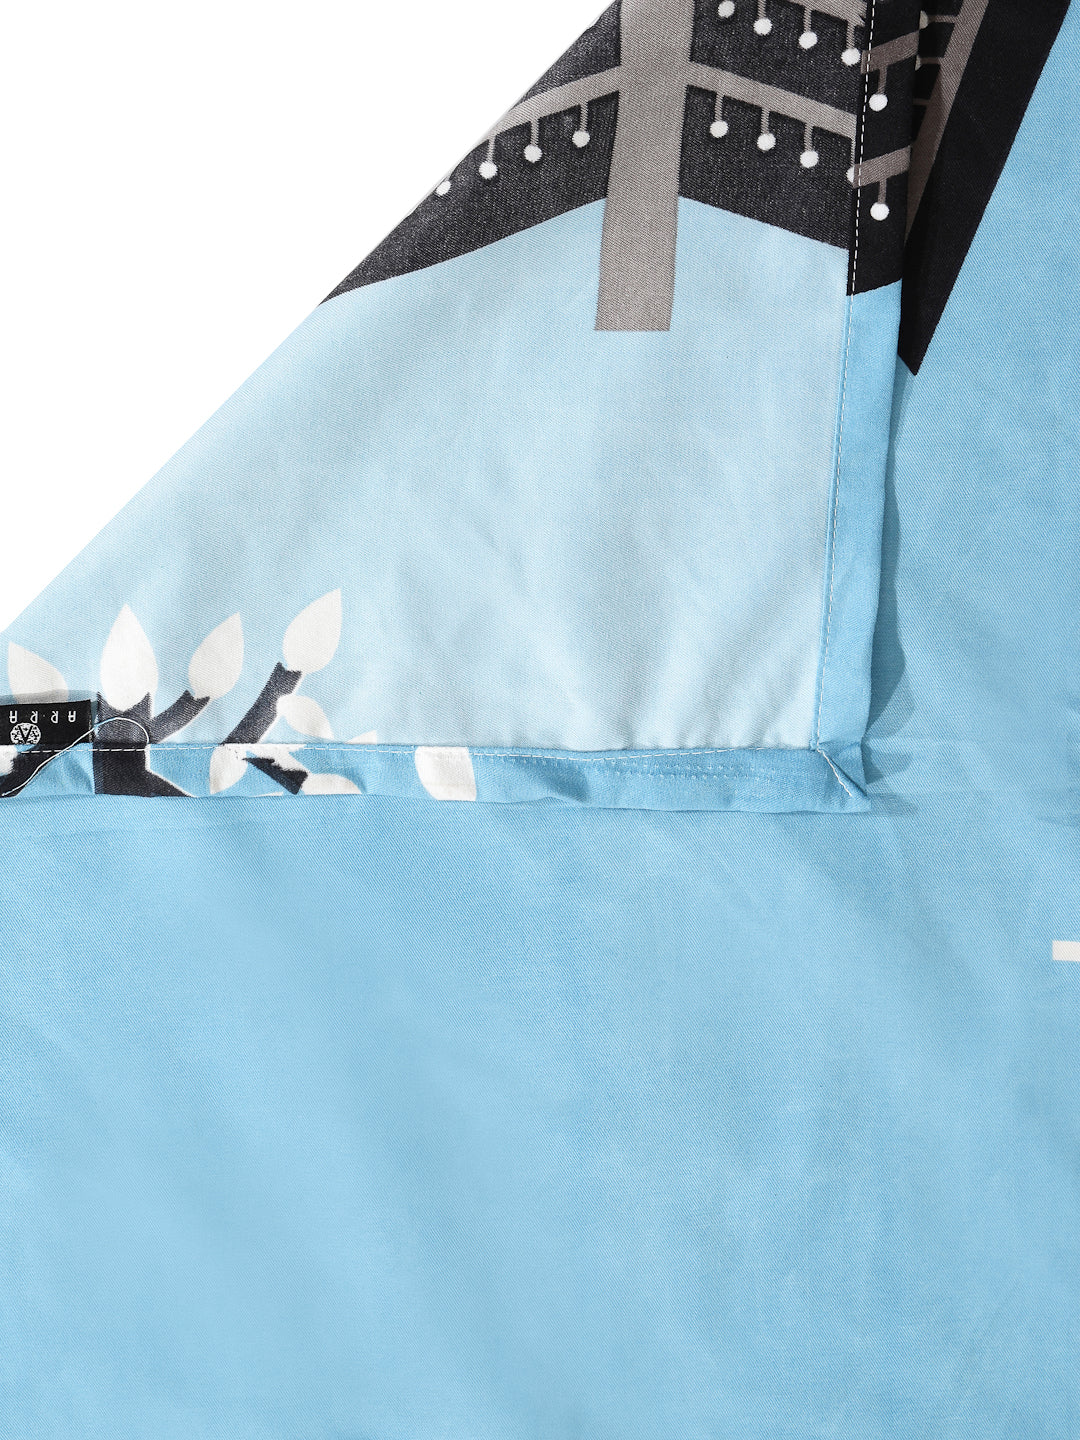 Arrabi Blue Leaf Cotton Blend 6 SEATER Table Cover (180 x 130 cm)